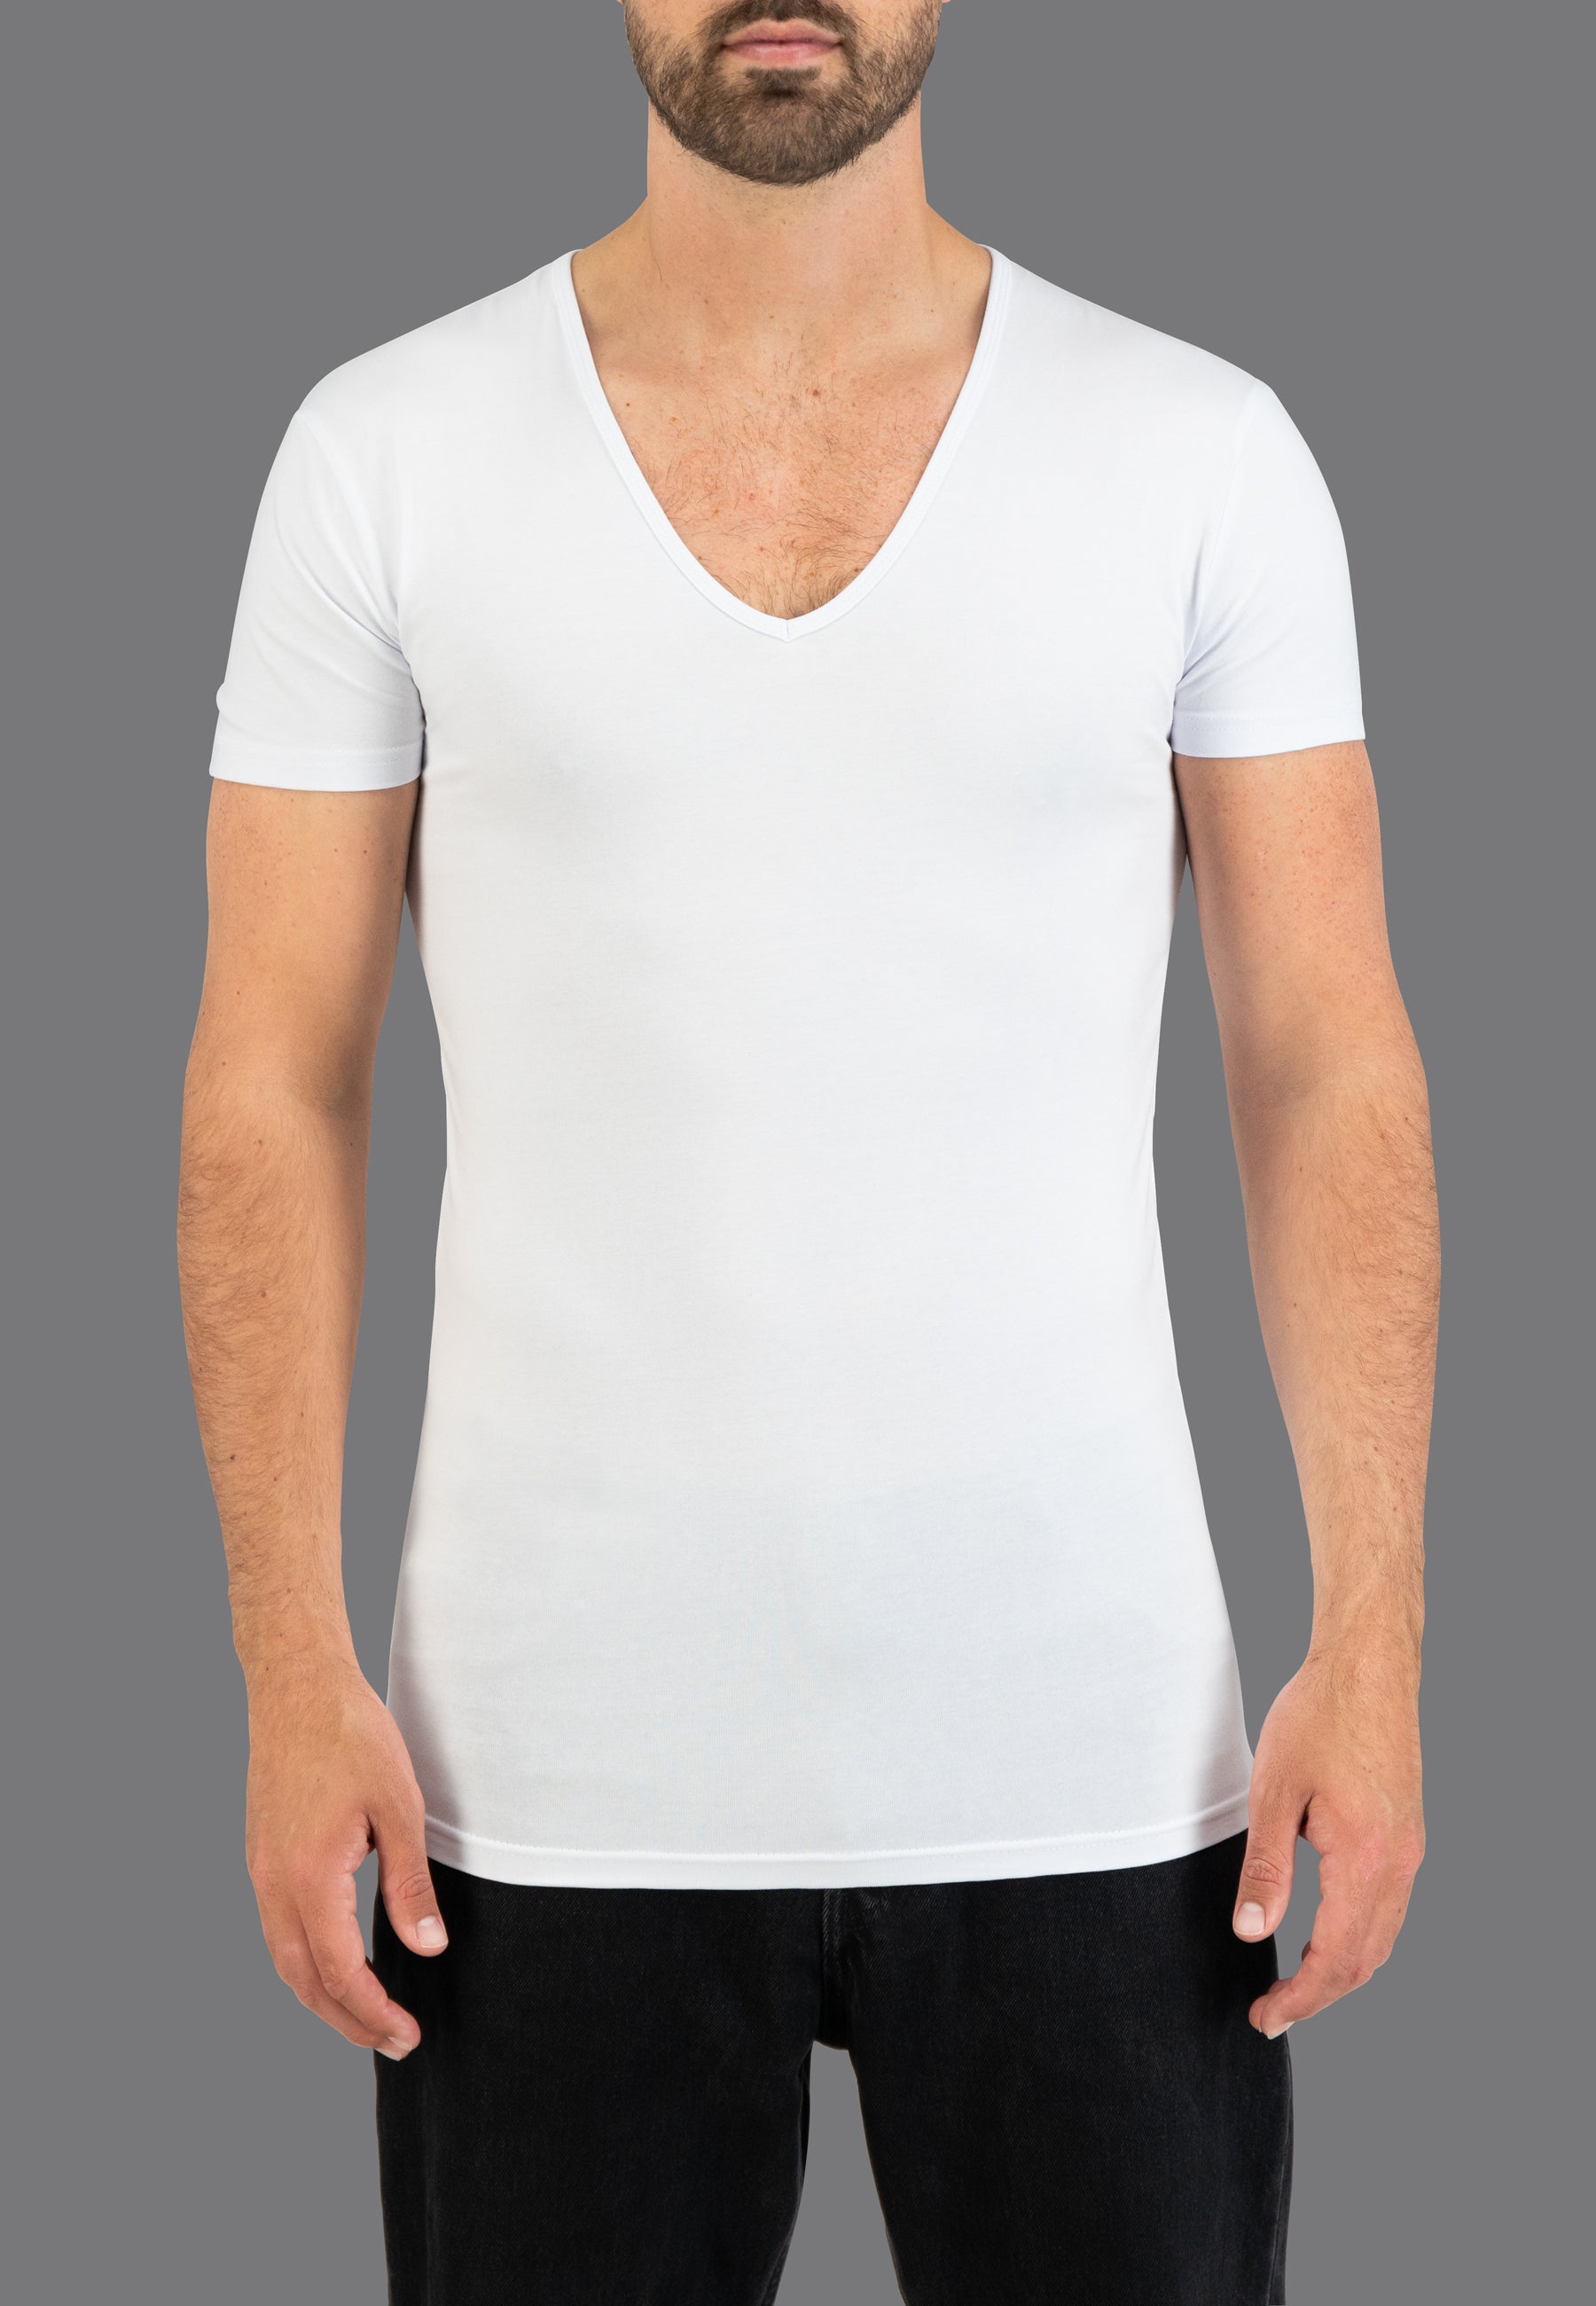 Deep V-neck shirts for men buy online